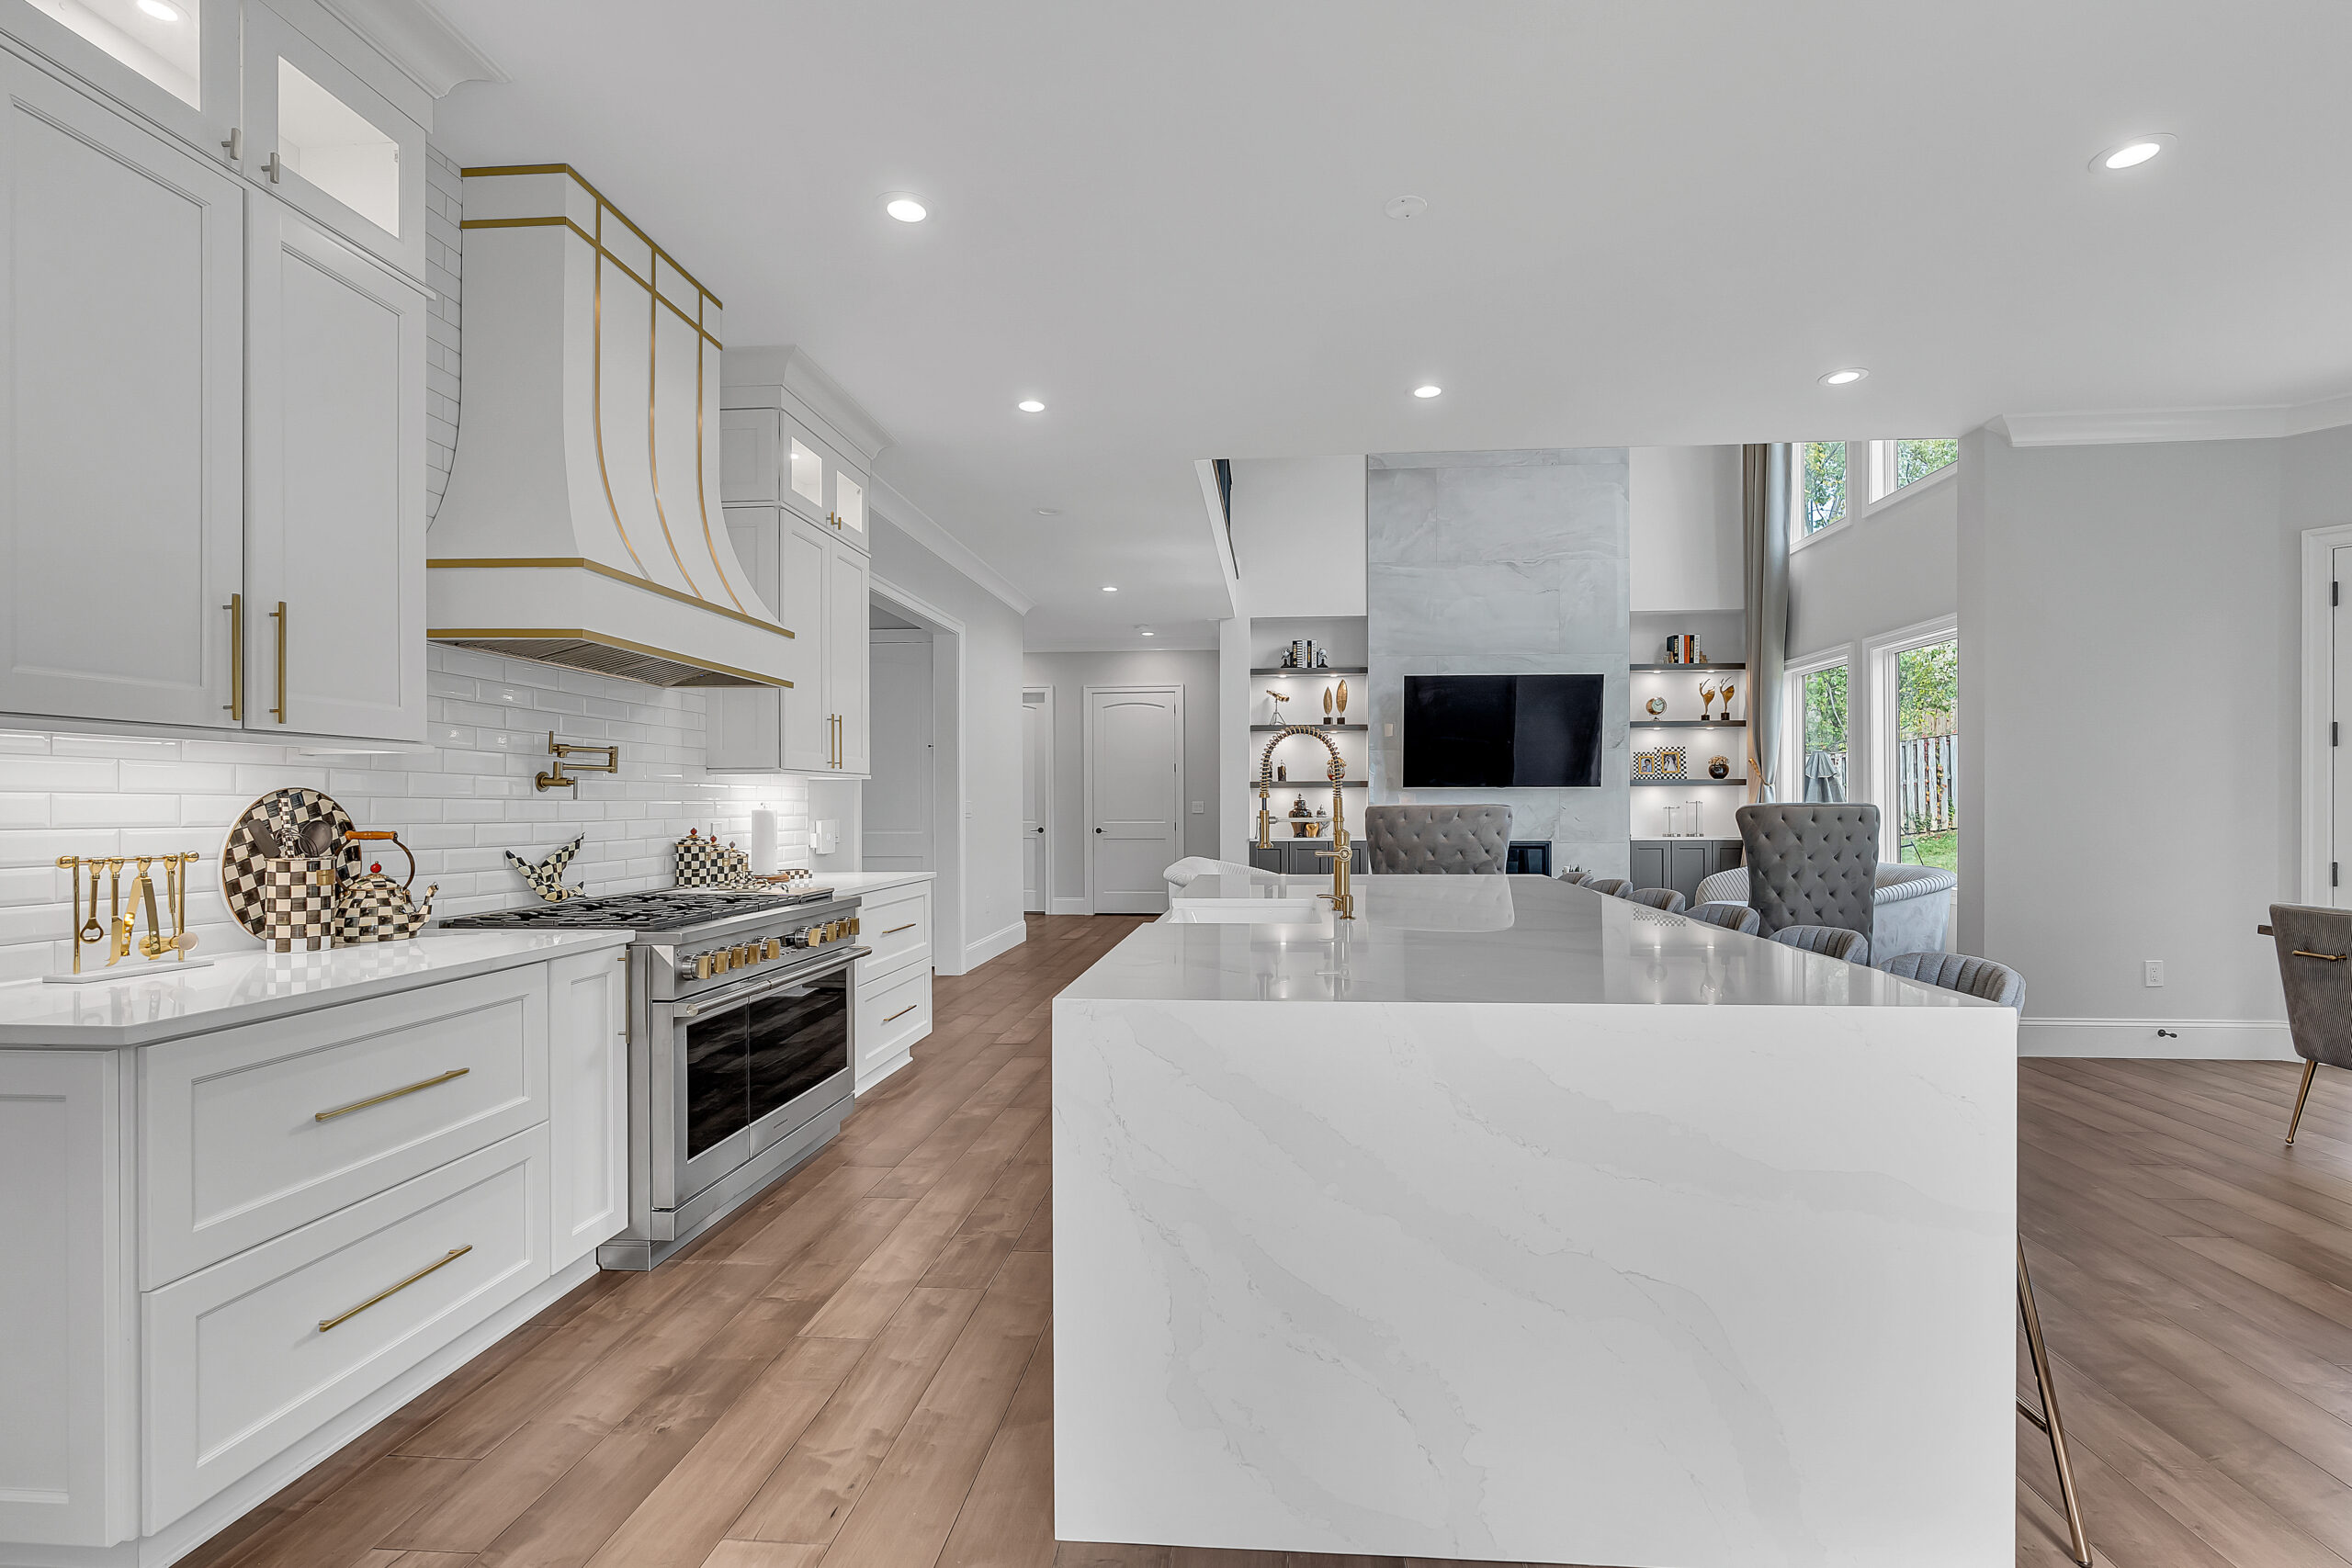 Elegant kitchen with white countertop